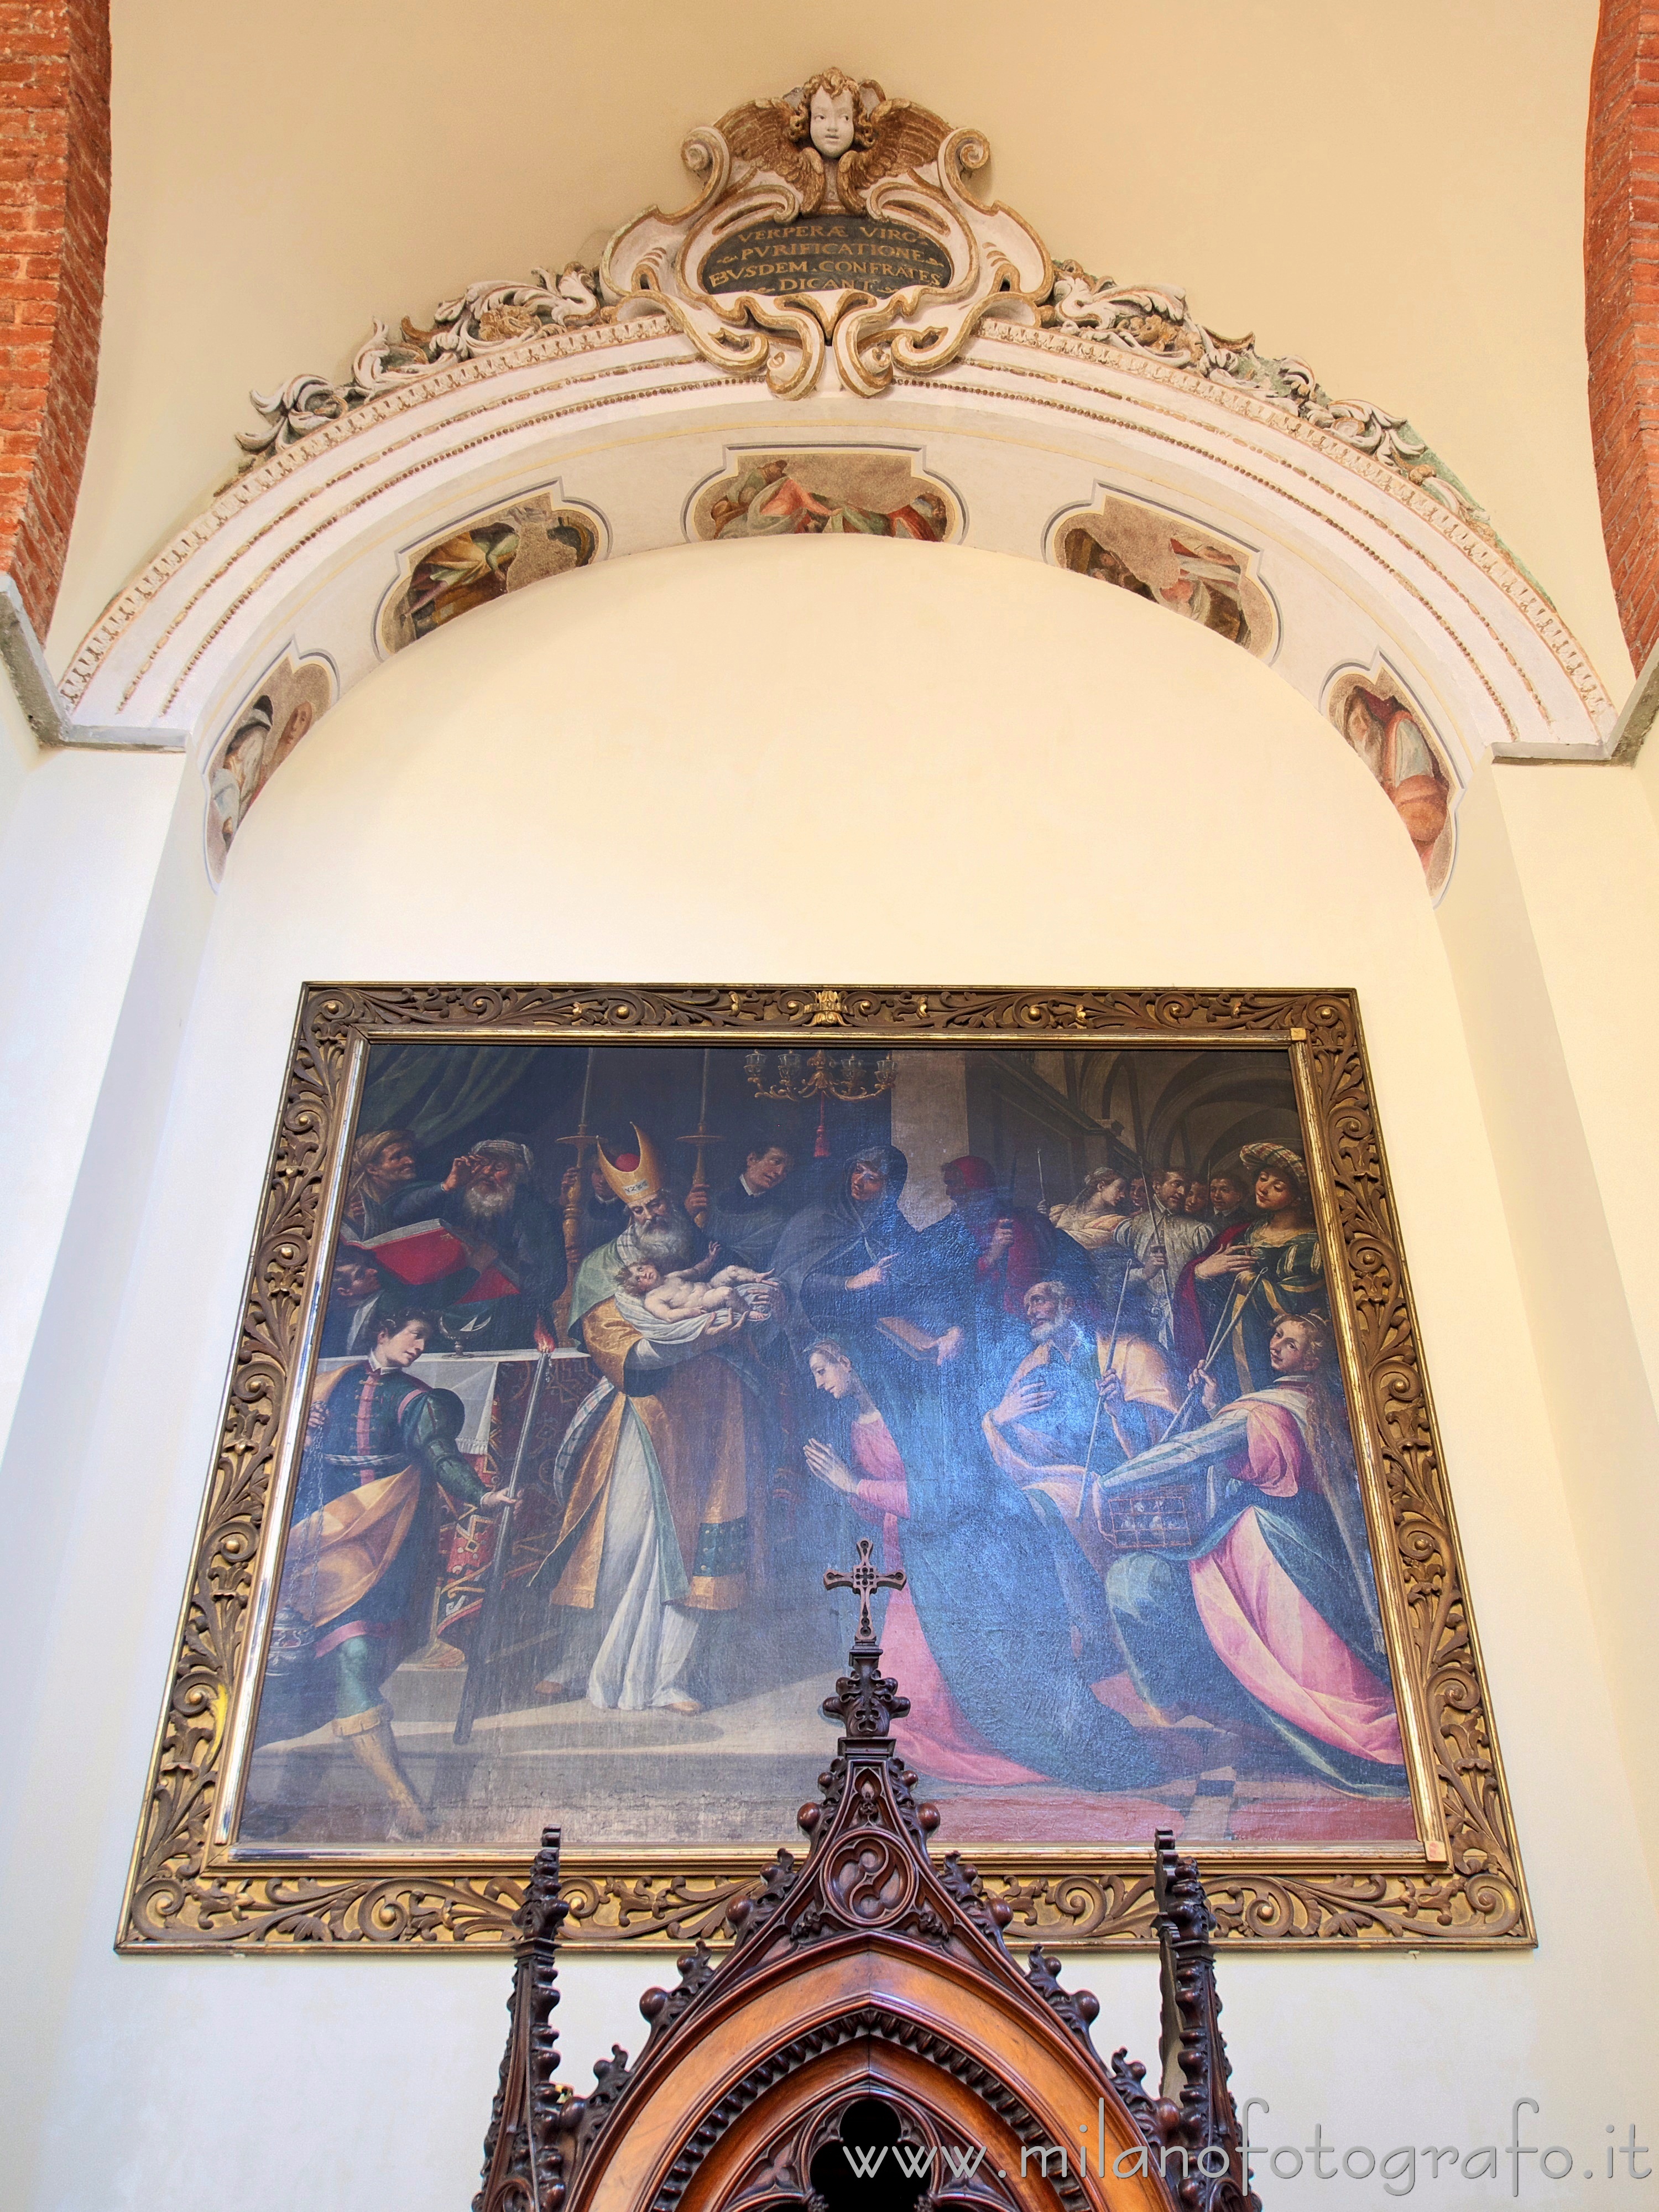 Milano: Presentazione di Gesù al tempio nella Chiesa di Santa Maria del Carmine - Milano